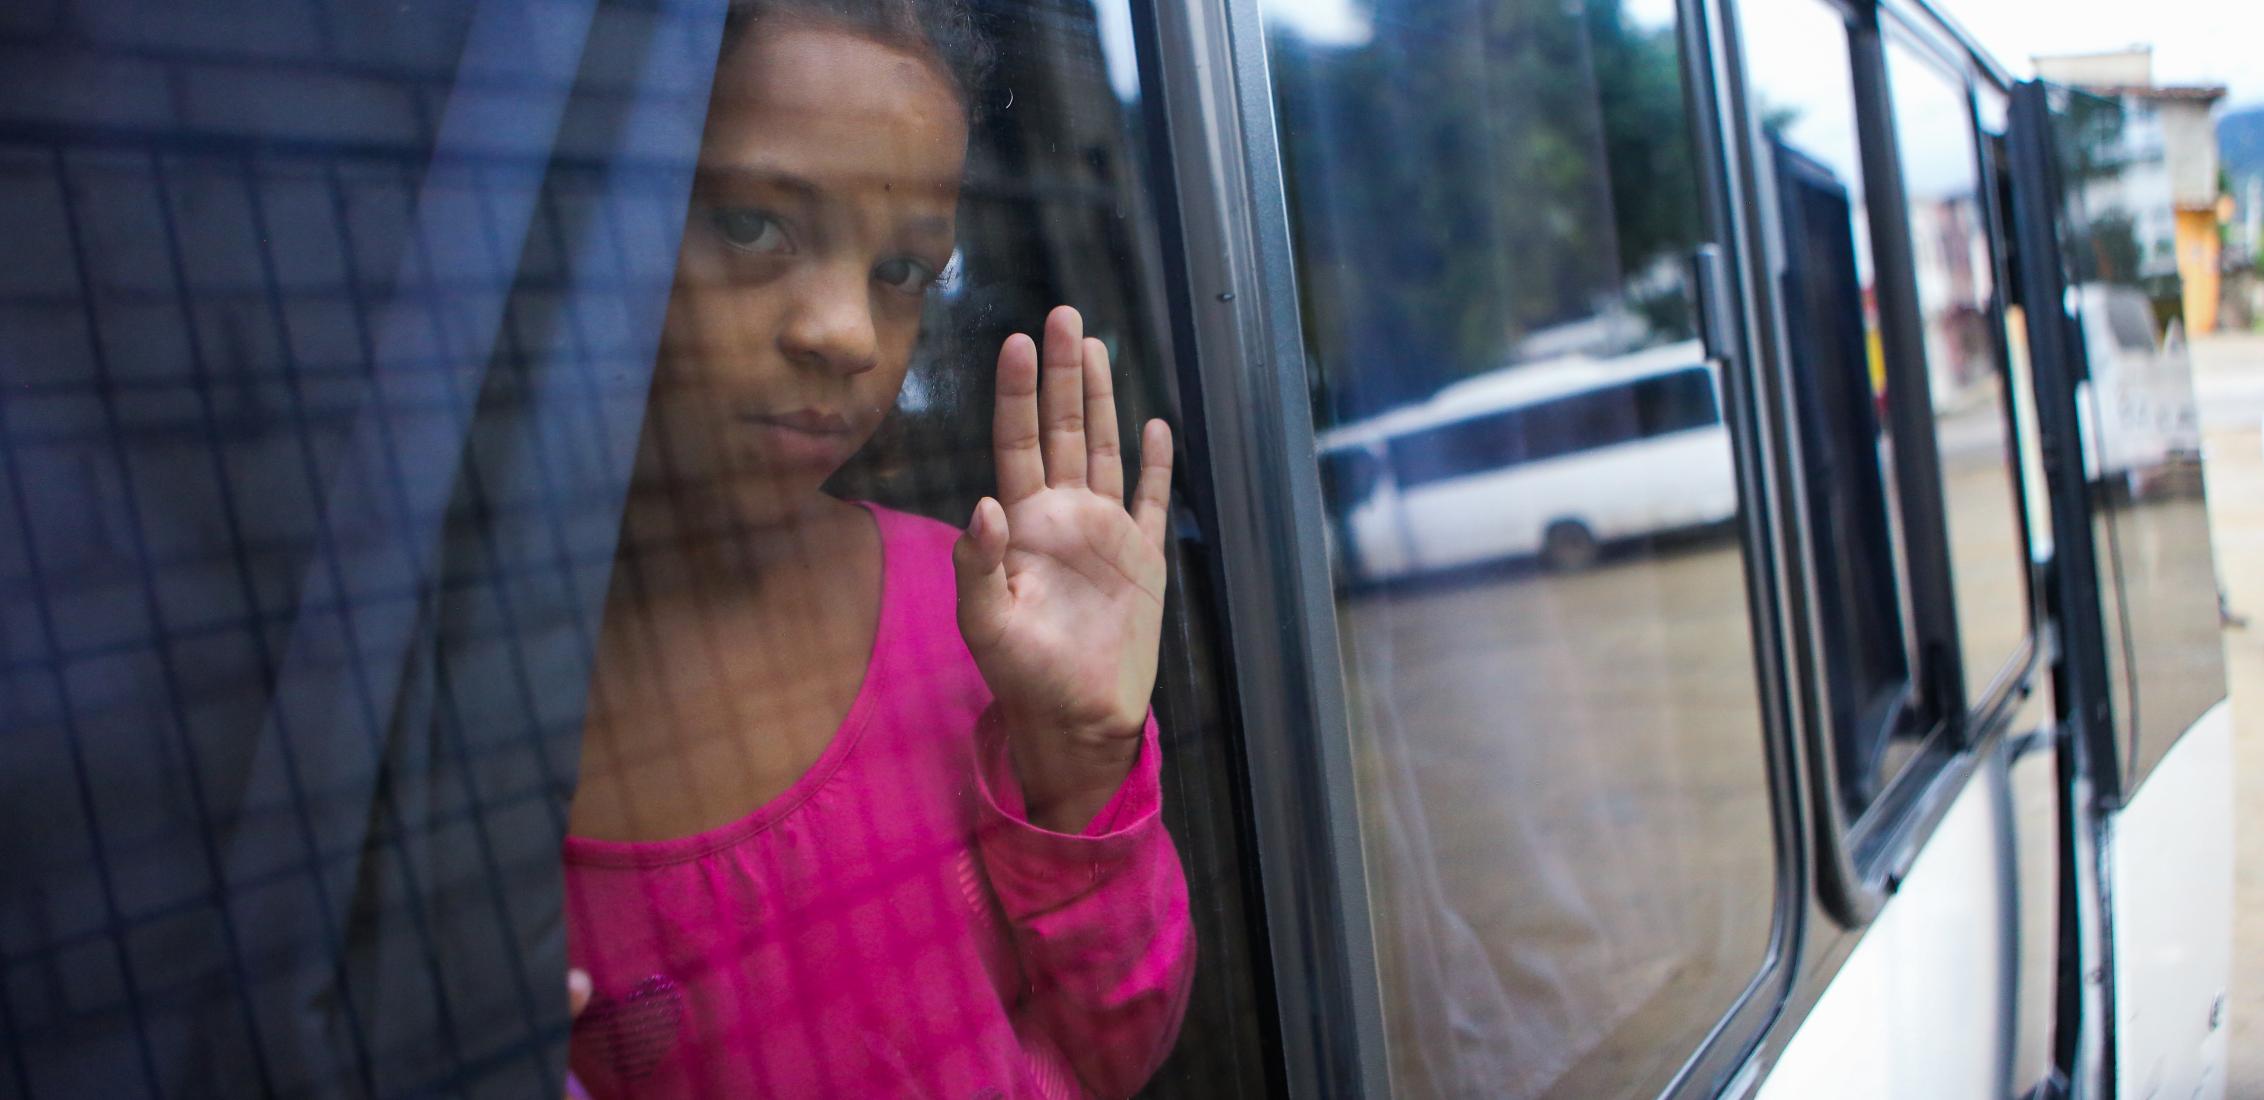 UNI480116/Membreño إدغيمار، البالغة من العمر 10 سنوات، تنظر من نافذة الحافلة التي ستنقلها إلى تيغوسيغالبا لتتبع طريق الهجرة إلى الولايات المتحدة، بعد مغادرة مركز الراحة المؤقت "أليفيو ديل سوفريمينتو" الواقع في إل بارايسو، في 4 نوفمبر 2023. في هندوراس..